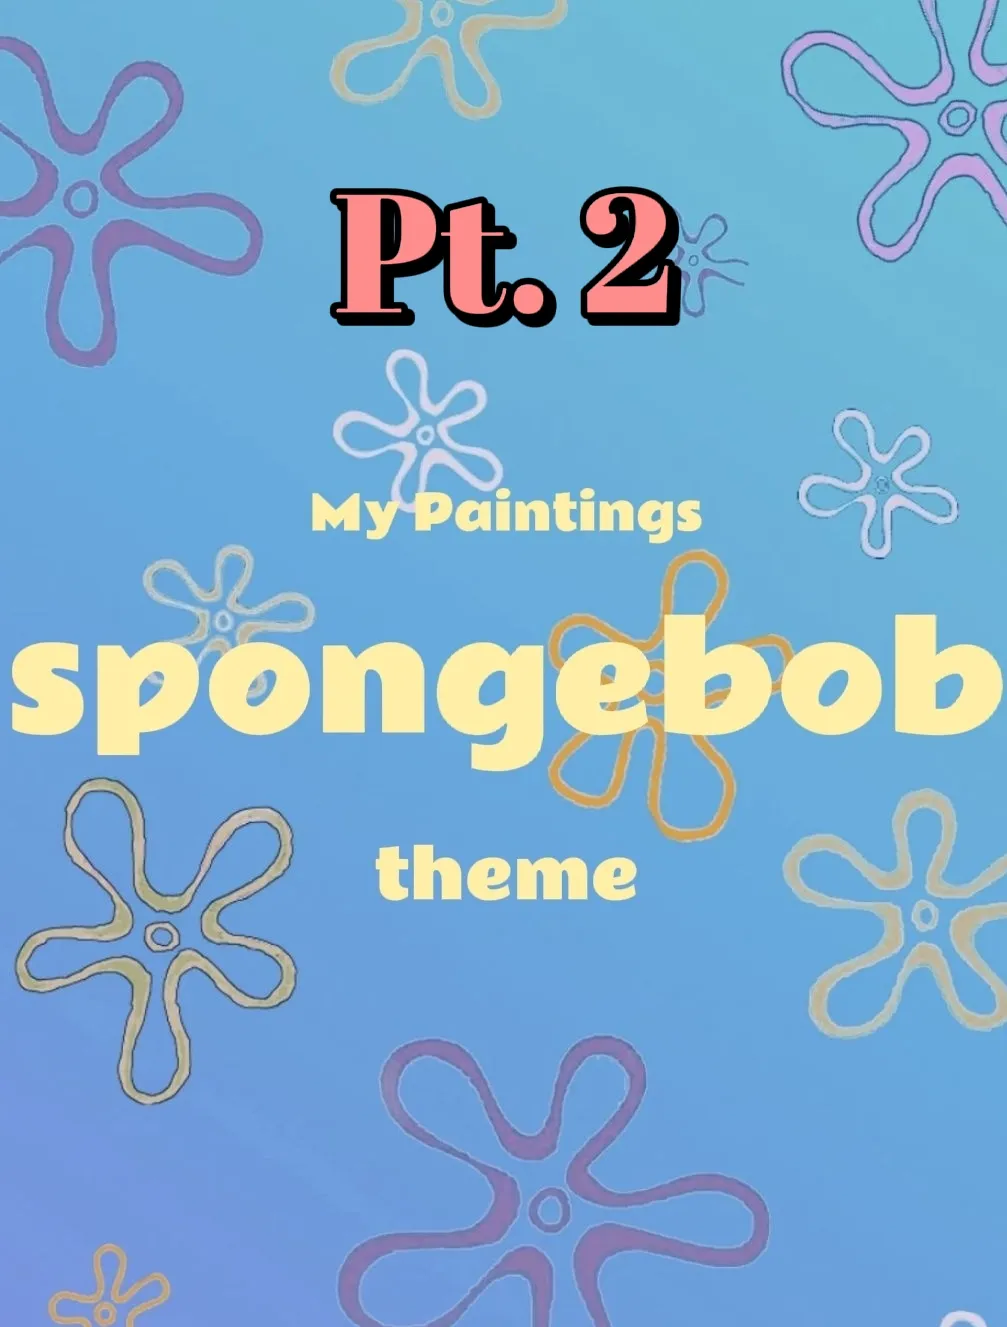 Best Gifts for Spongebob Fans - Lemon8 Search